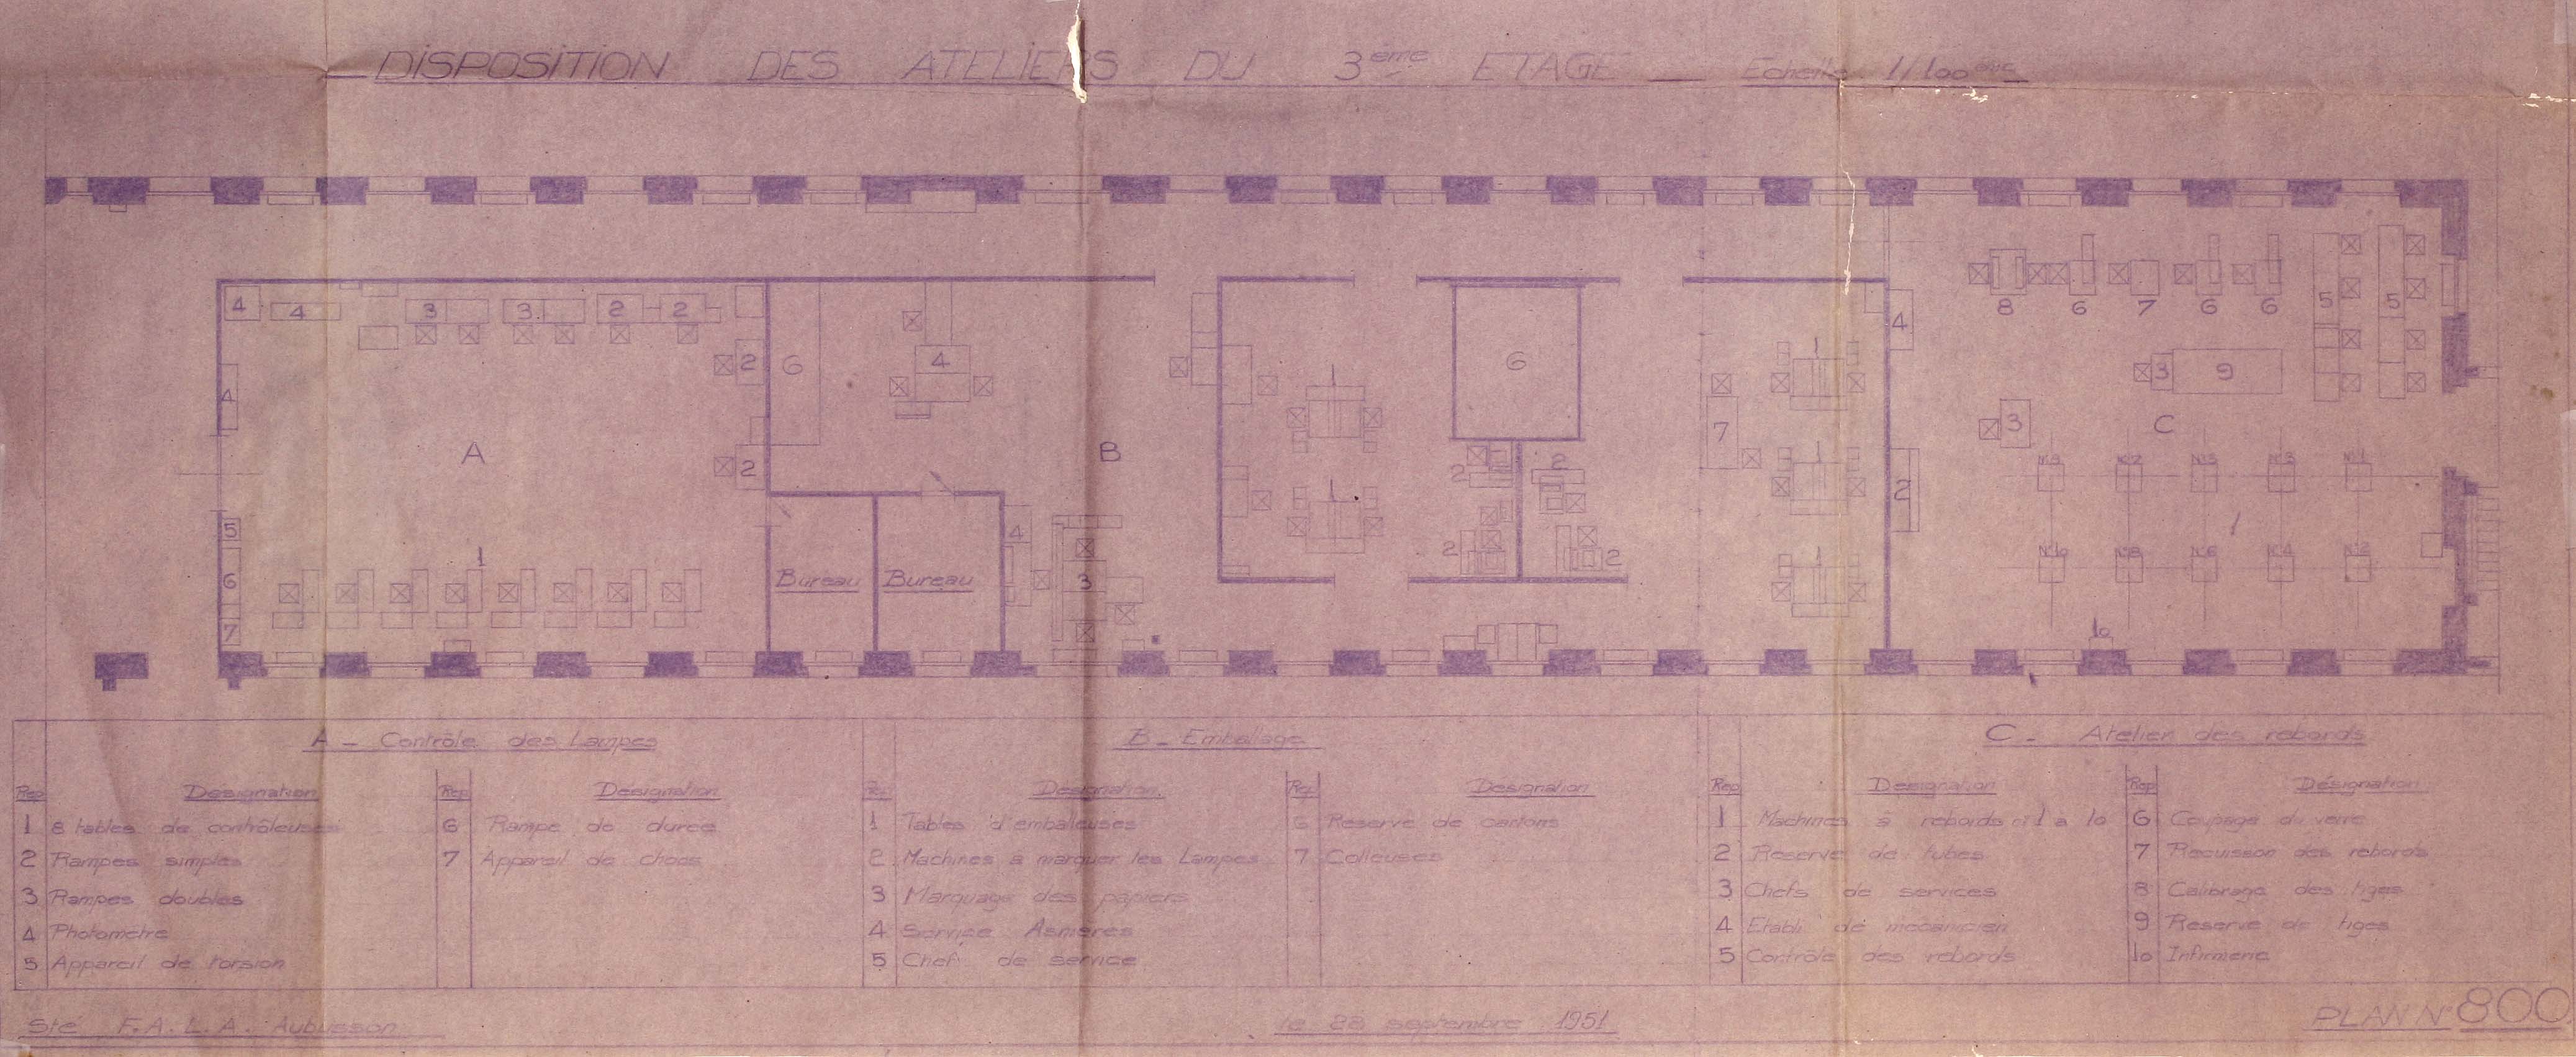 Plan avec la disposition des ateliers du 3ème étage du bâtiment A de la FALA (1948) (AC Aubusson).